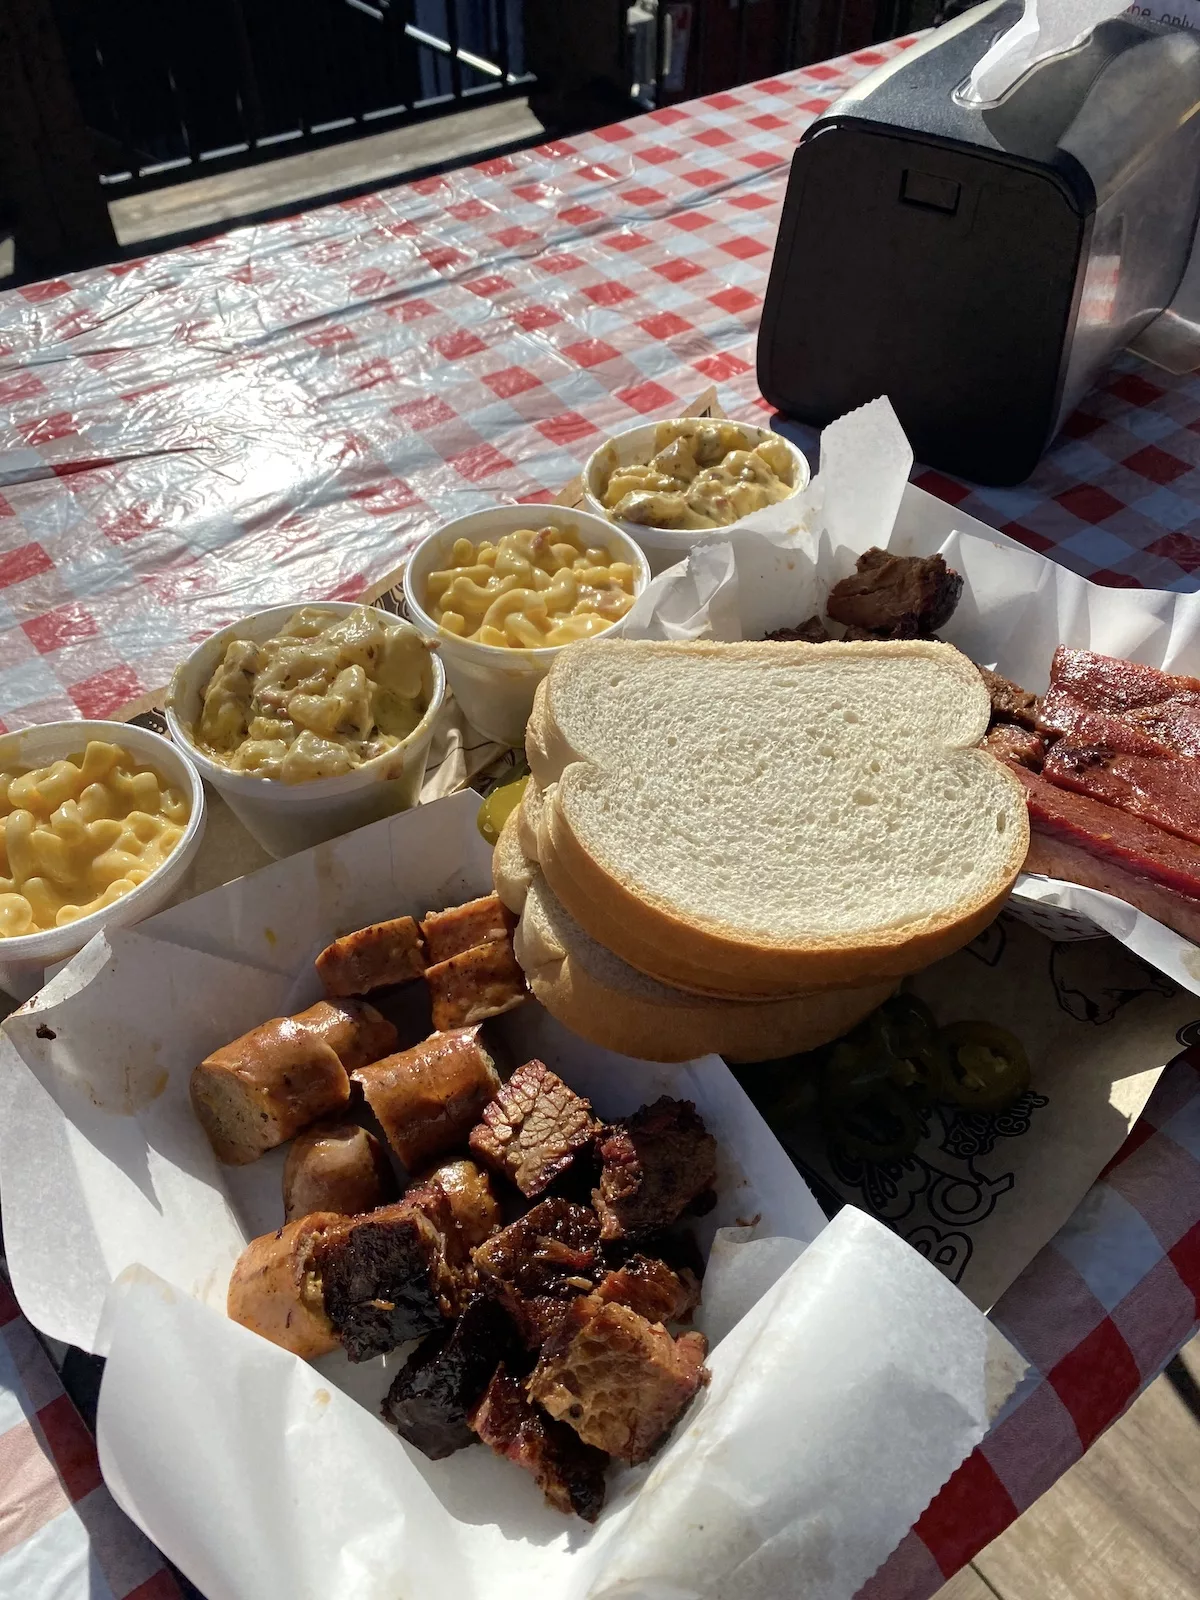 Tray of food from Slap's BBQ in Kansas City, Kansas